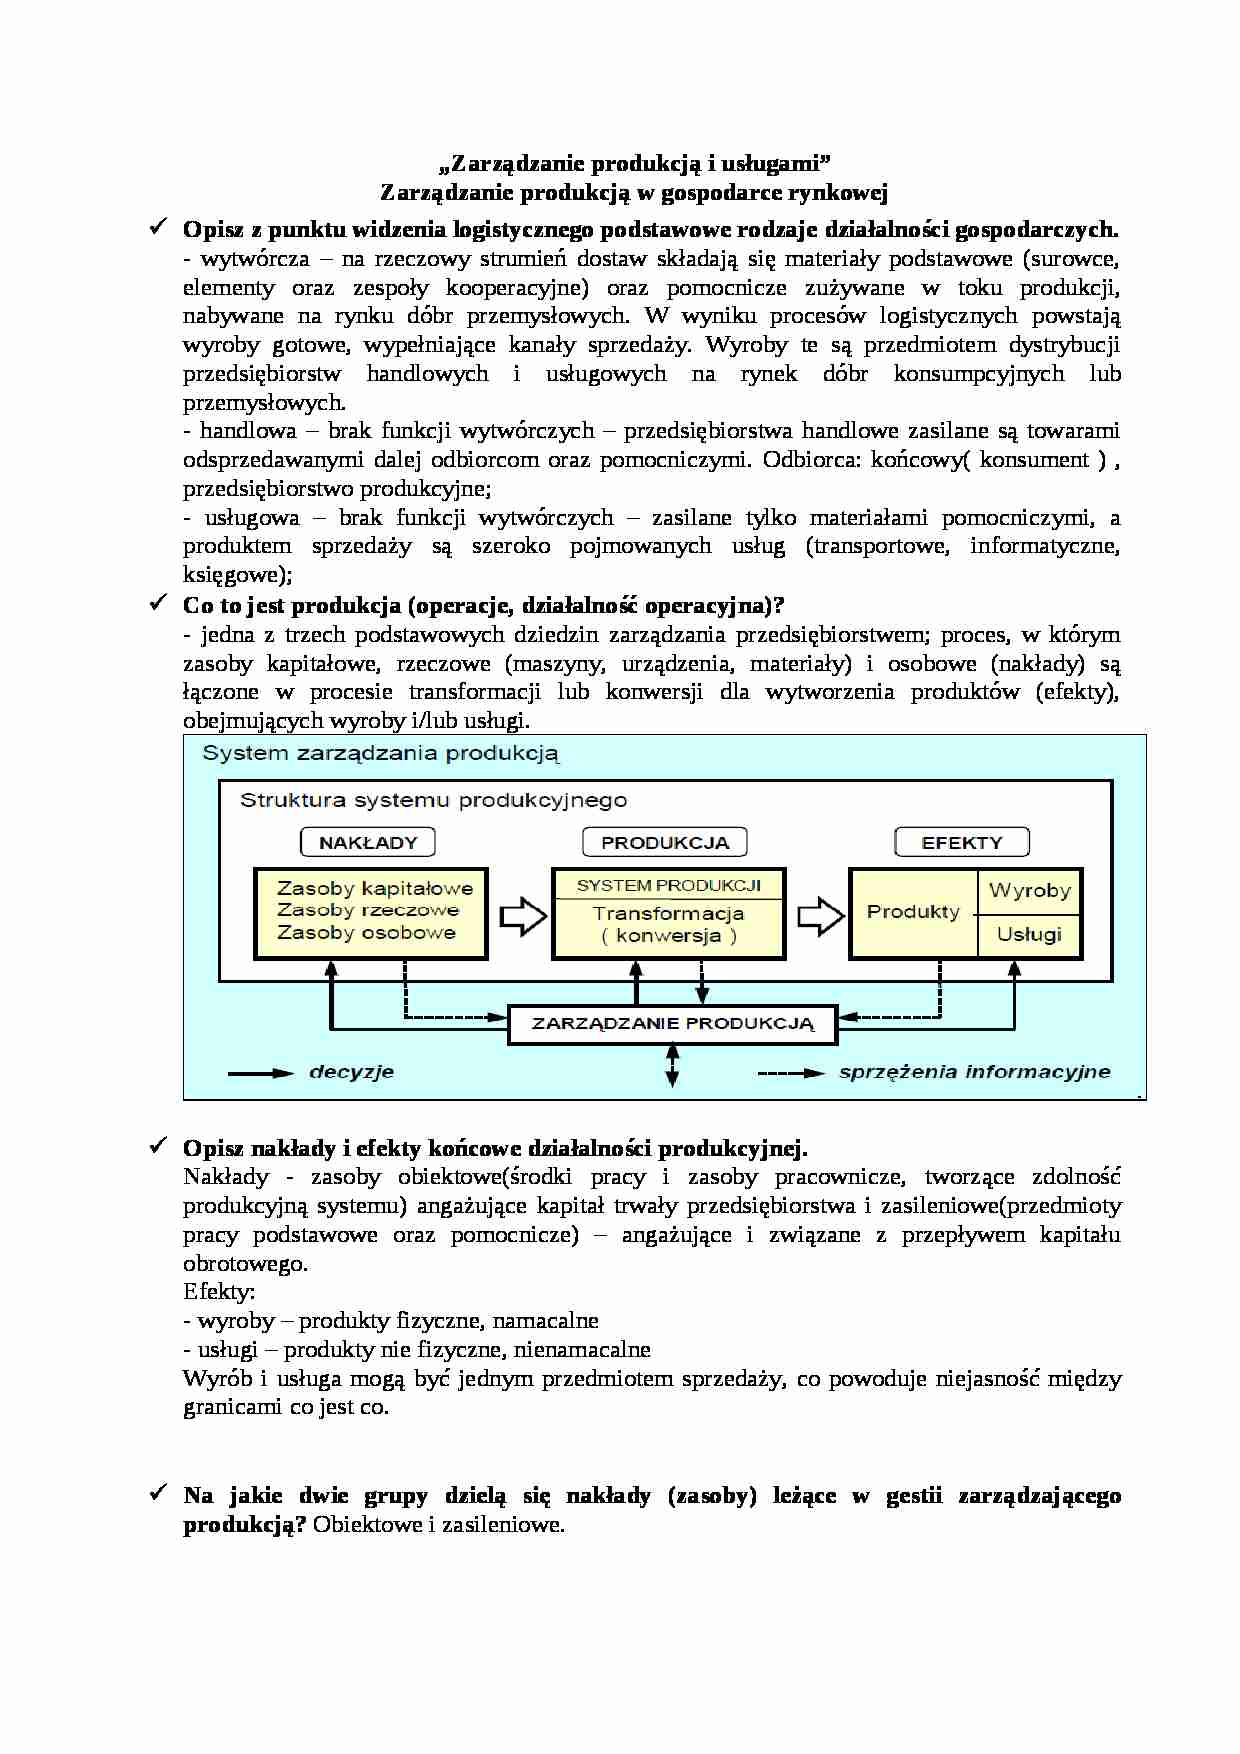 Zarządzanie produkcją i usługami - pytania kontrolne  - strona 1